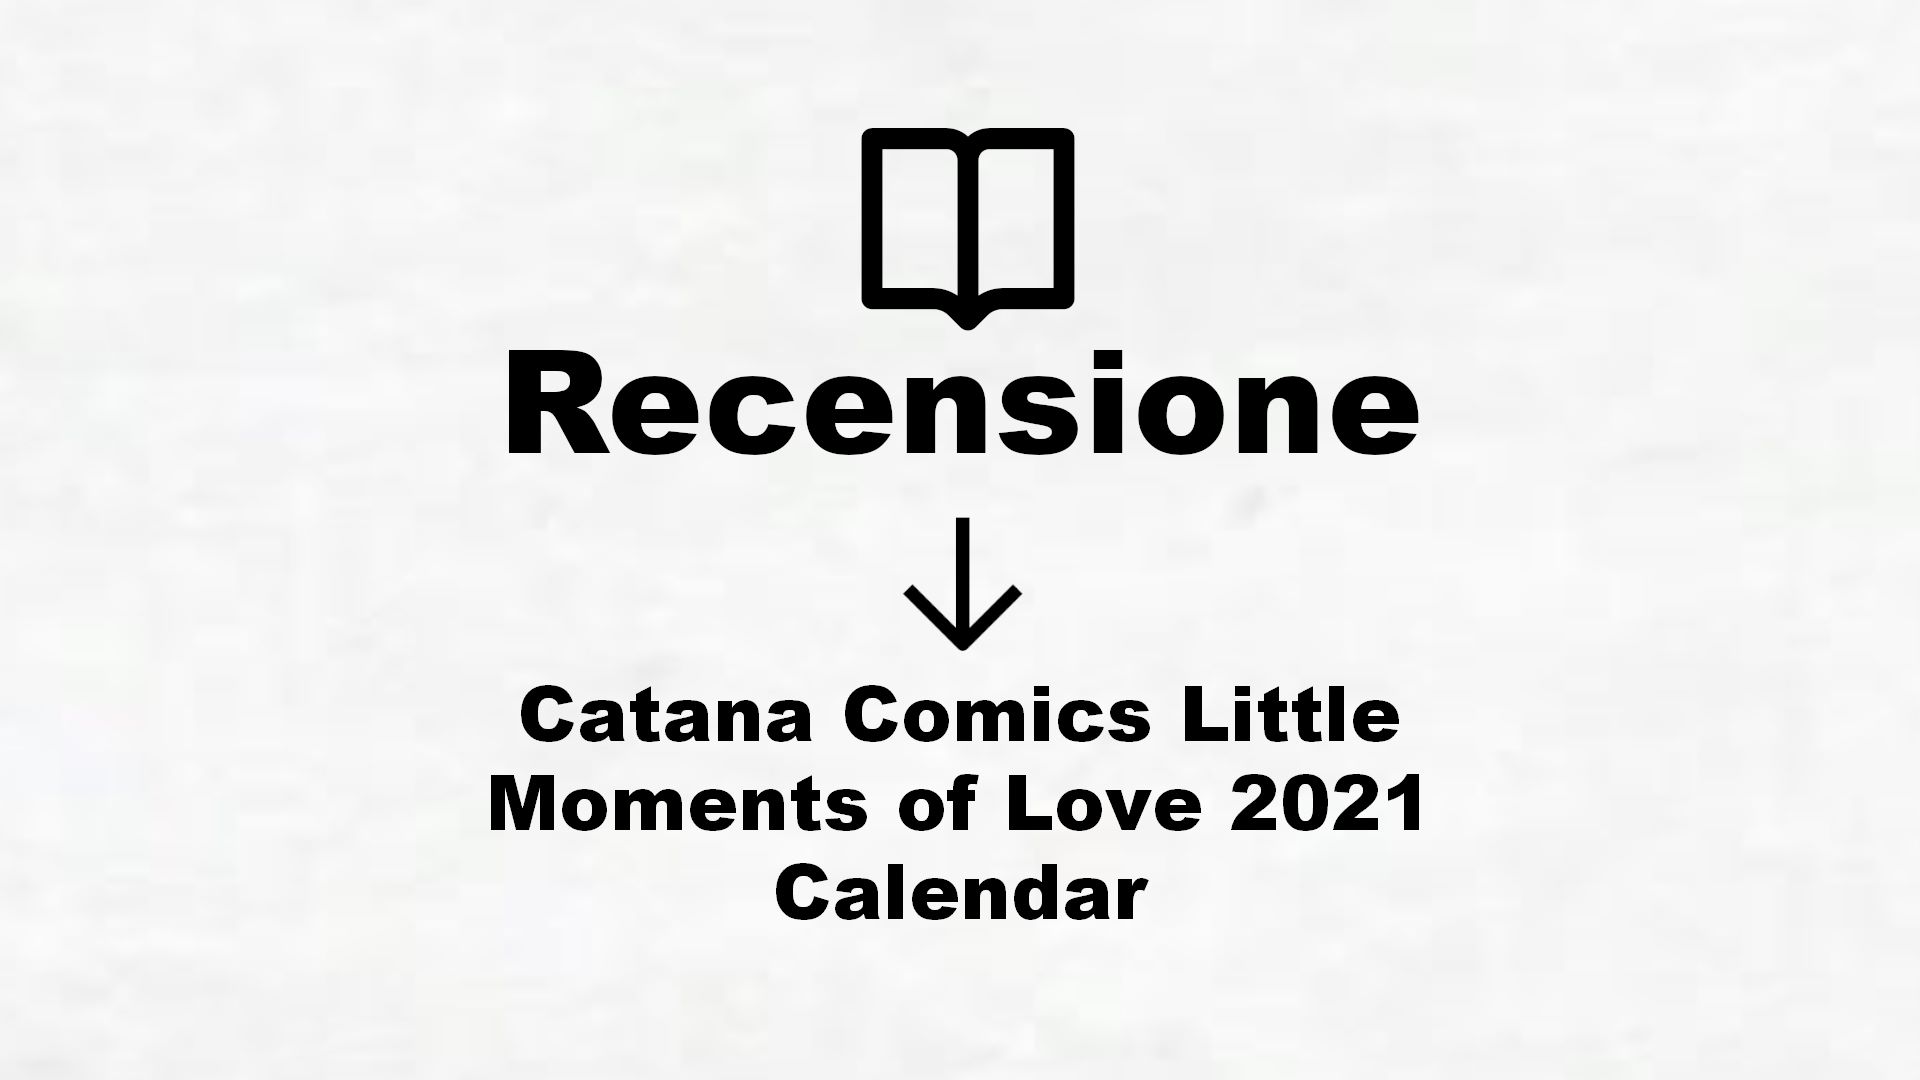 Catana Comics Little Moments of Love 2021 Calendar Recensione Libro